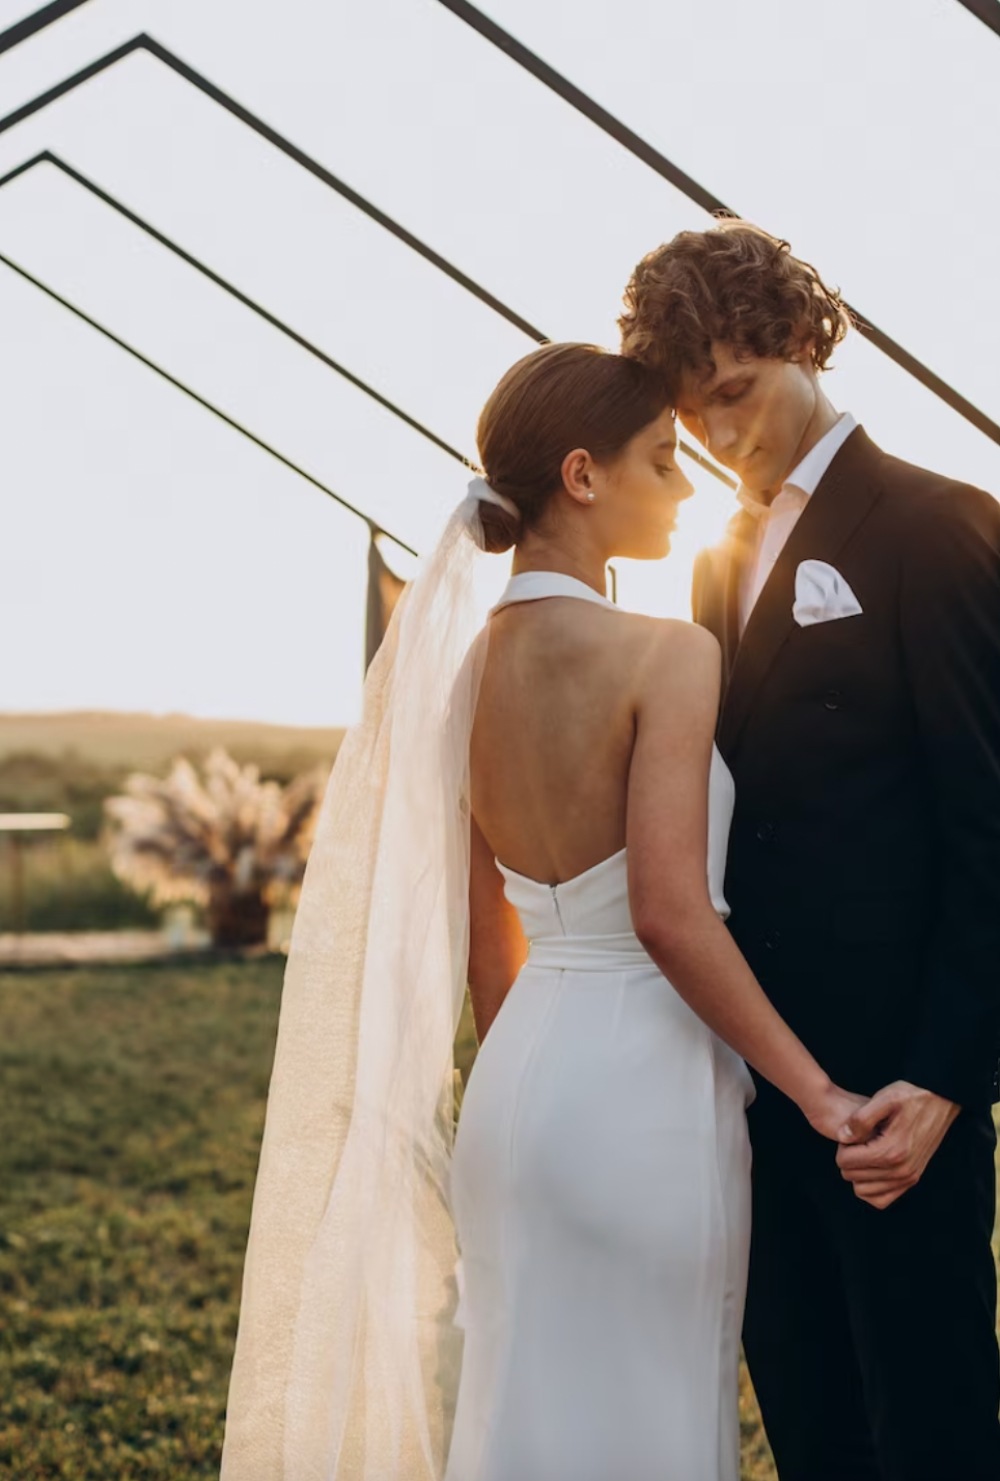 seguro de boda vestidos de novia espalda descubierta